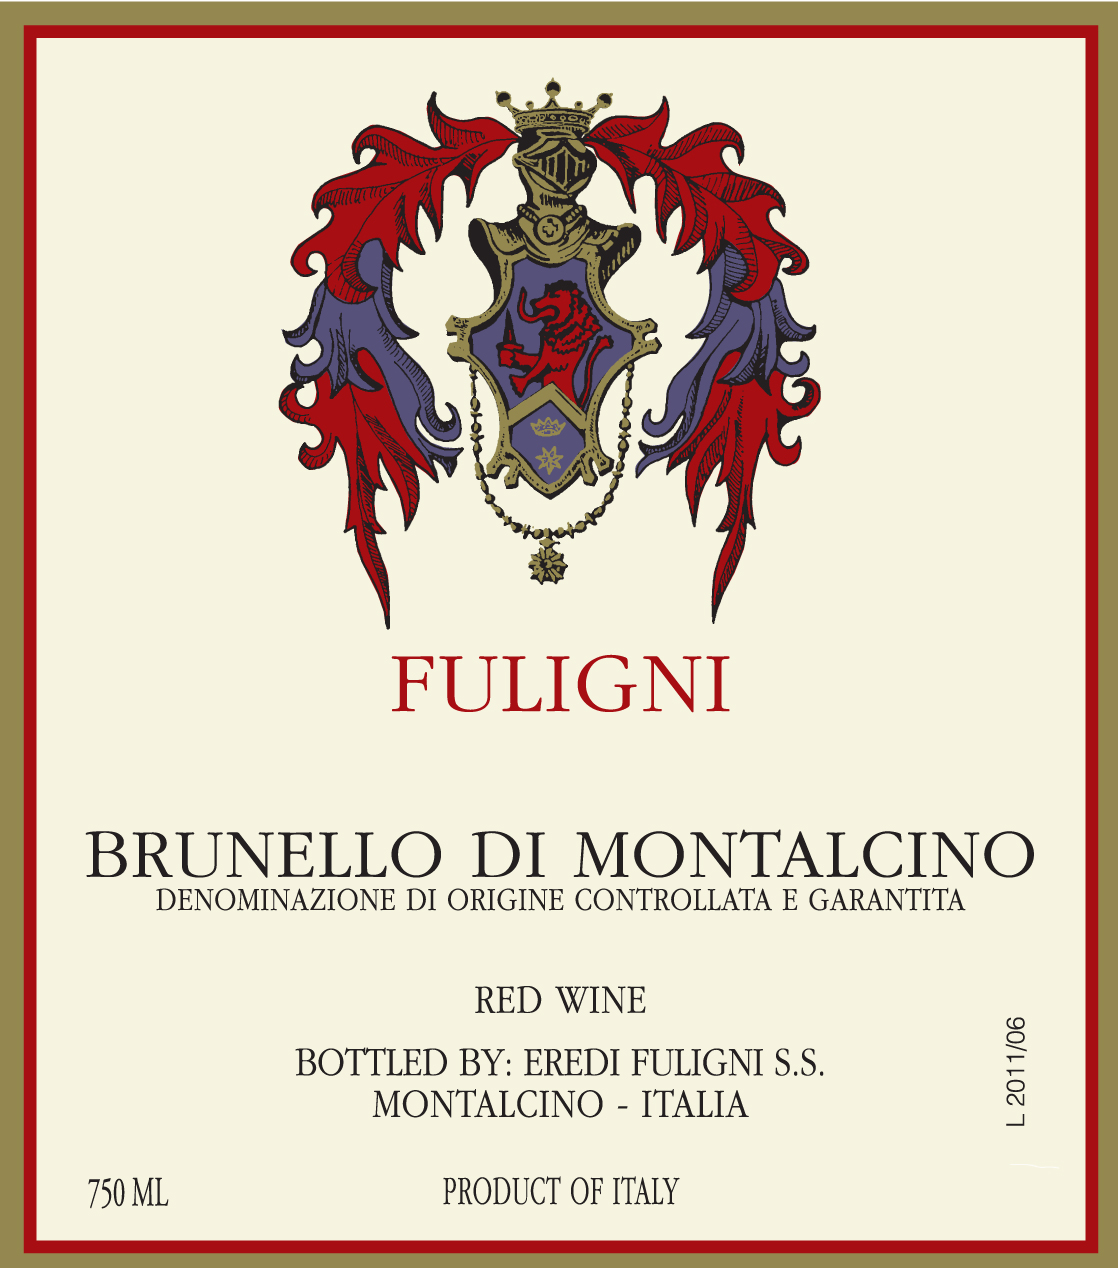 2018 Fuligni Brunello di Montalcino - click image for full description